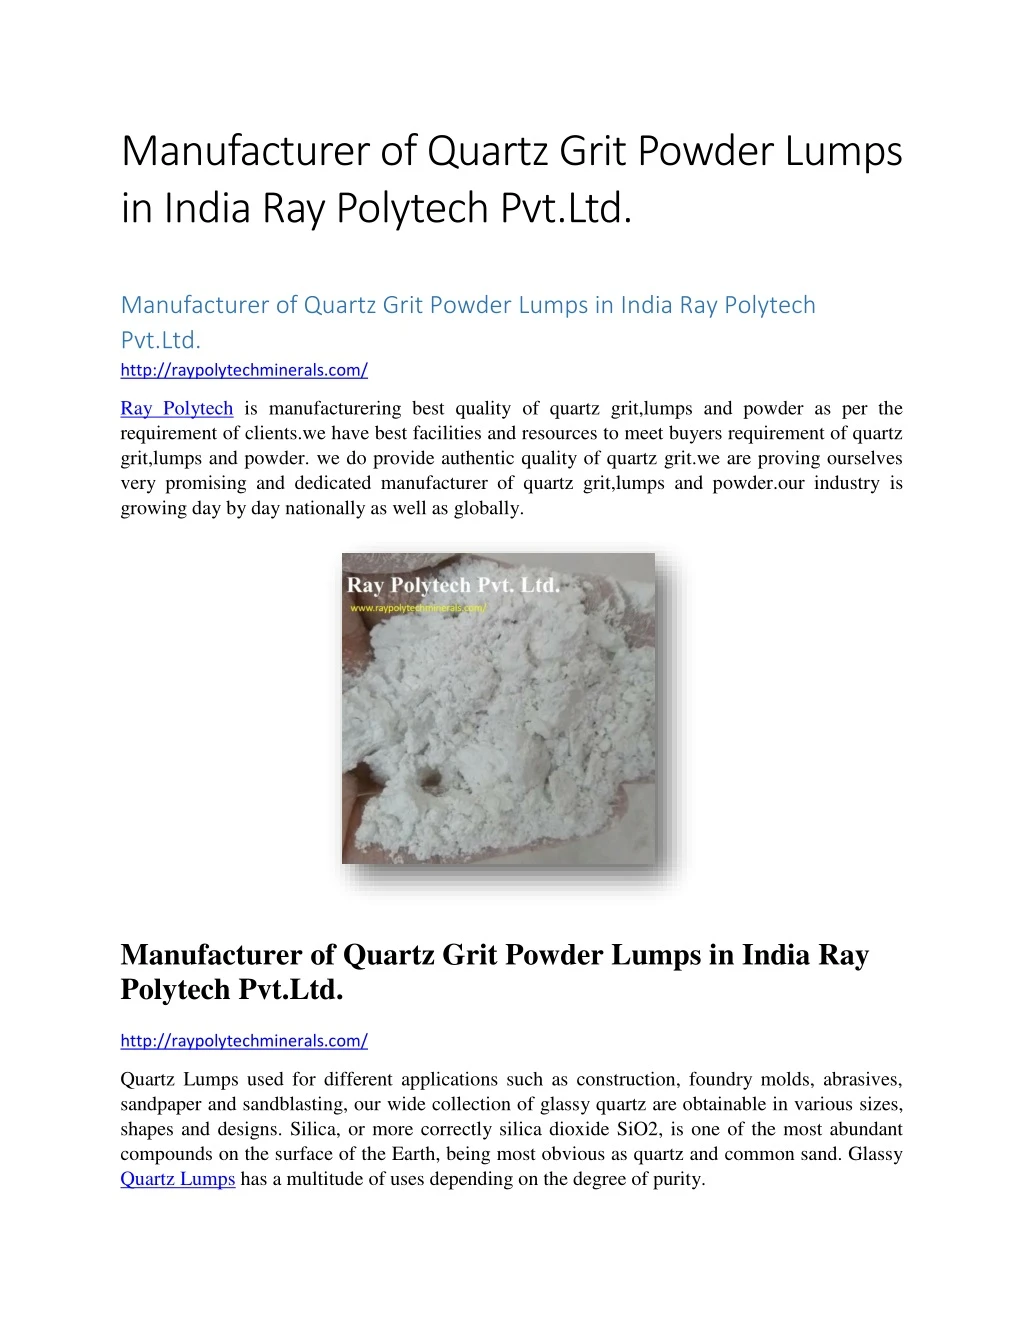 manufacturer of quartz grit powder lumps in india